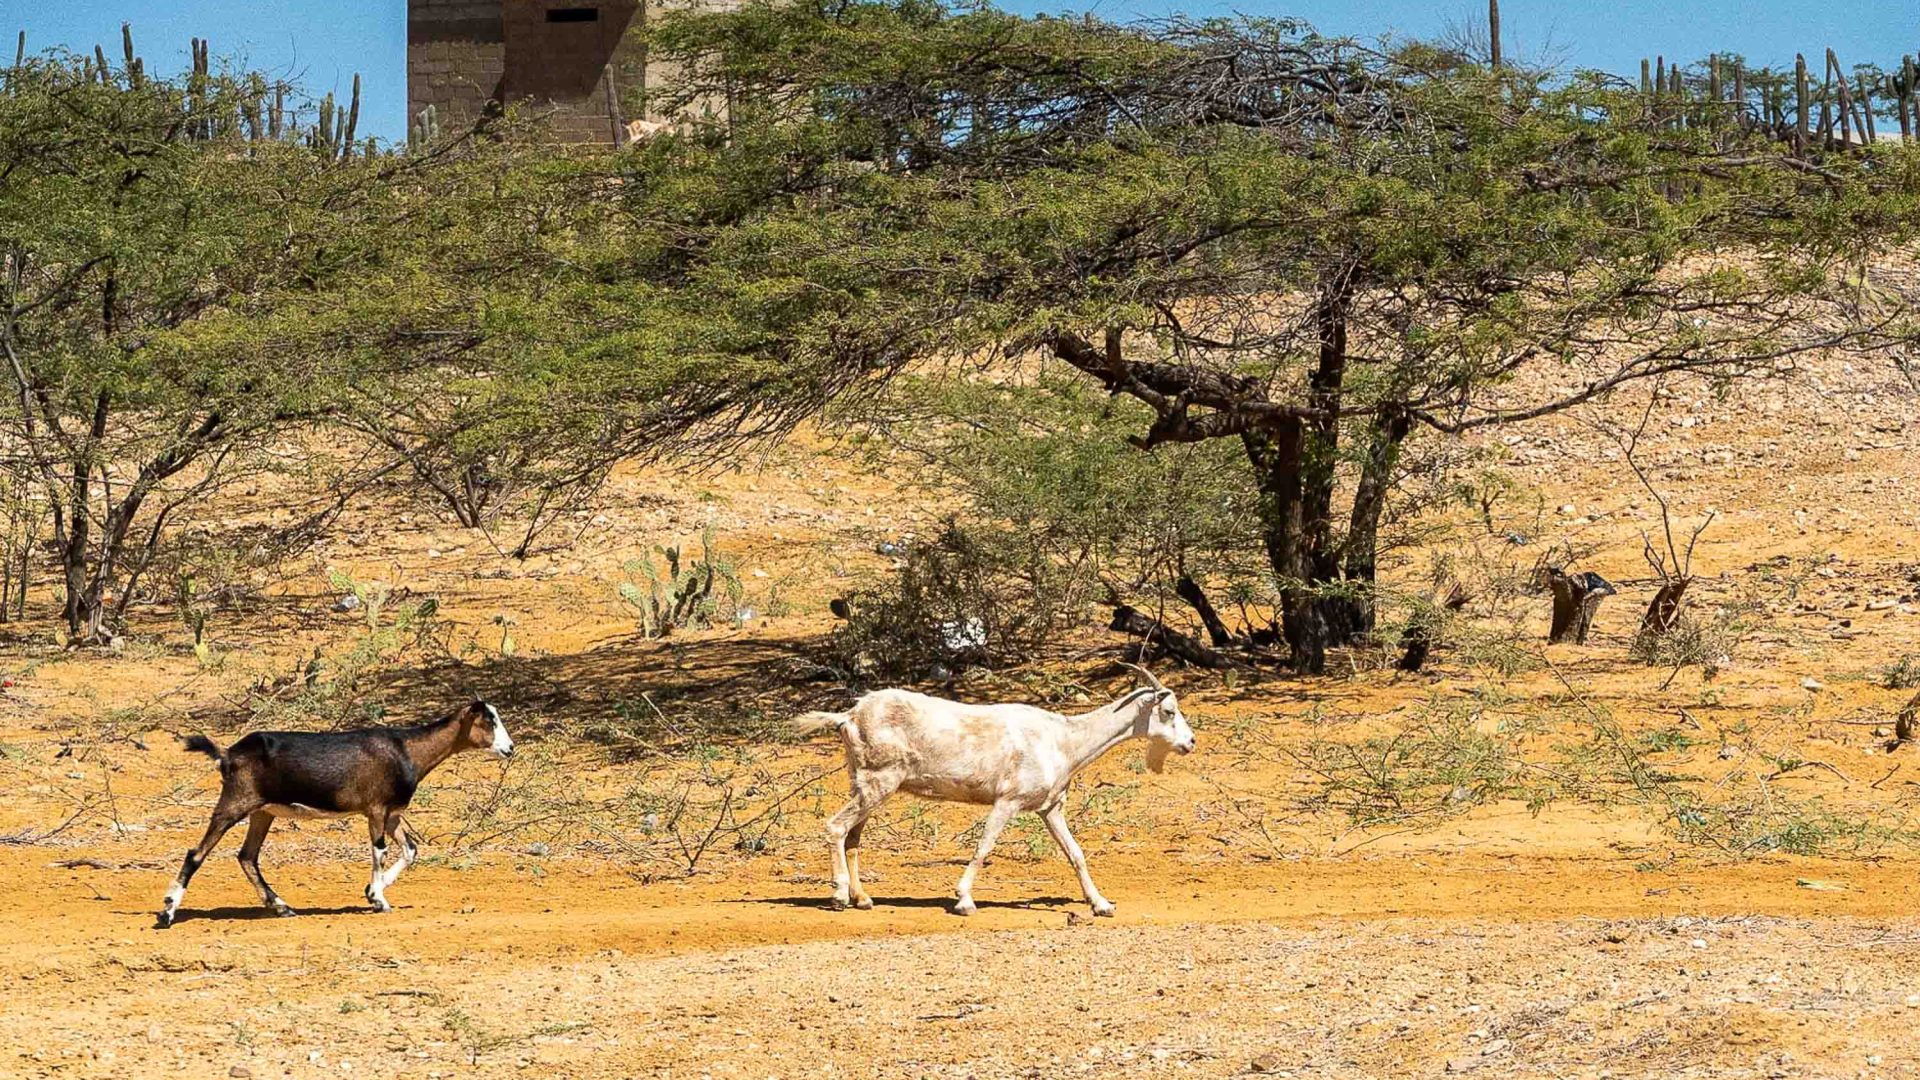 A white and a brown goat walk through arid land.